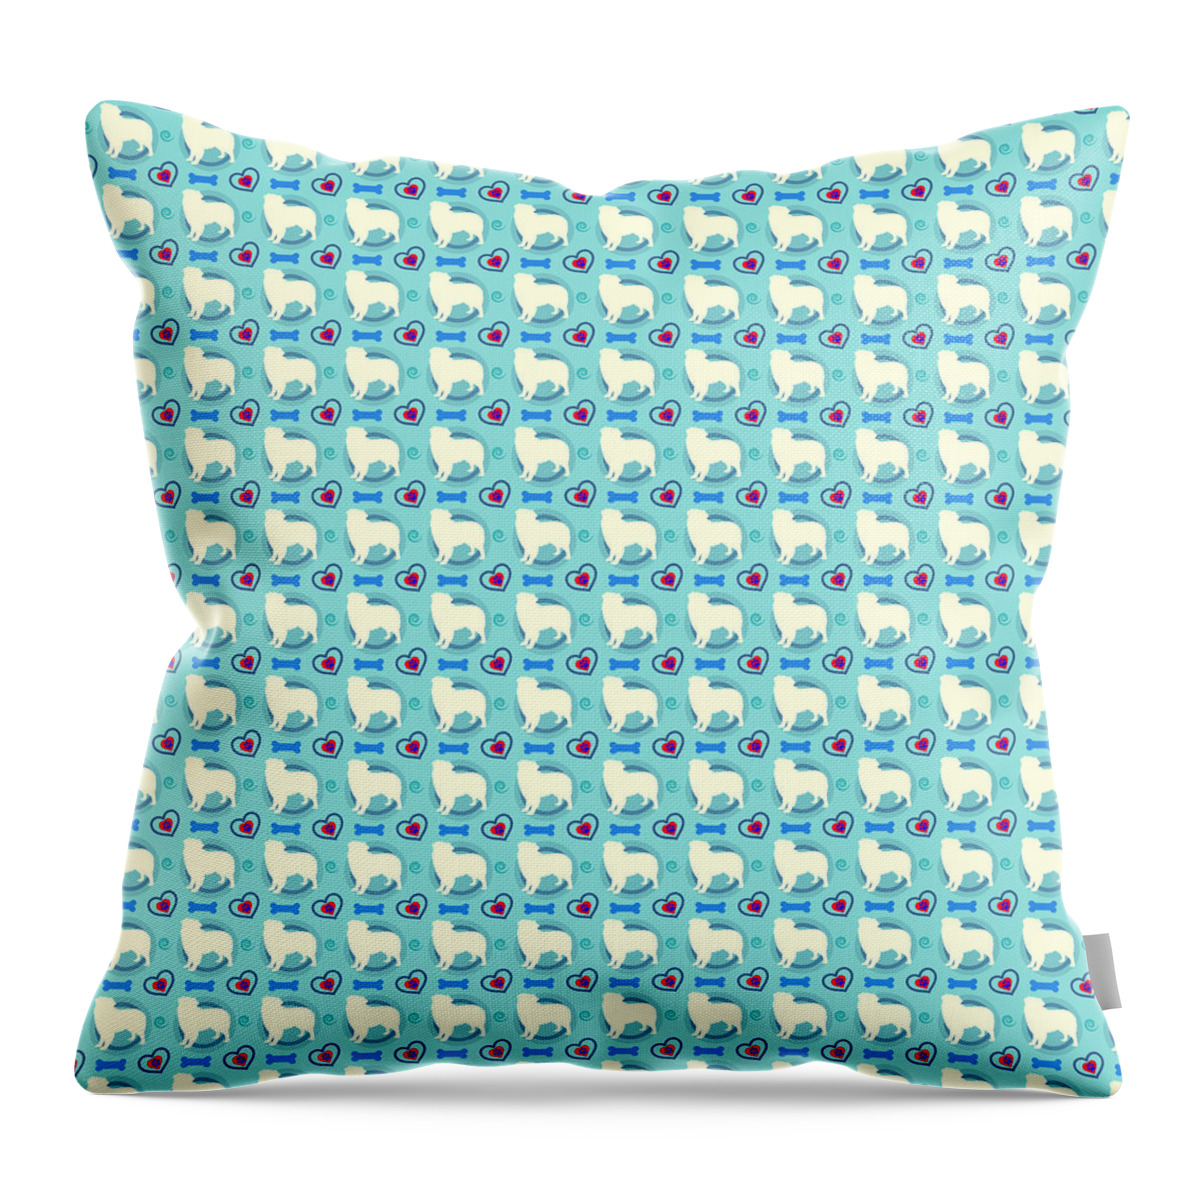 Aussie Throw Pillow featuring the digital art Aussie Dog Pattern by Becky Herrera